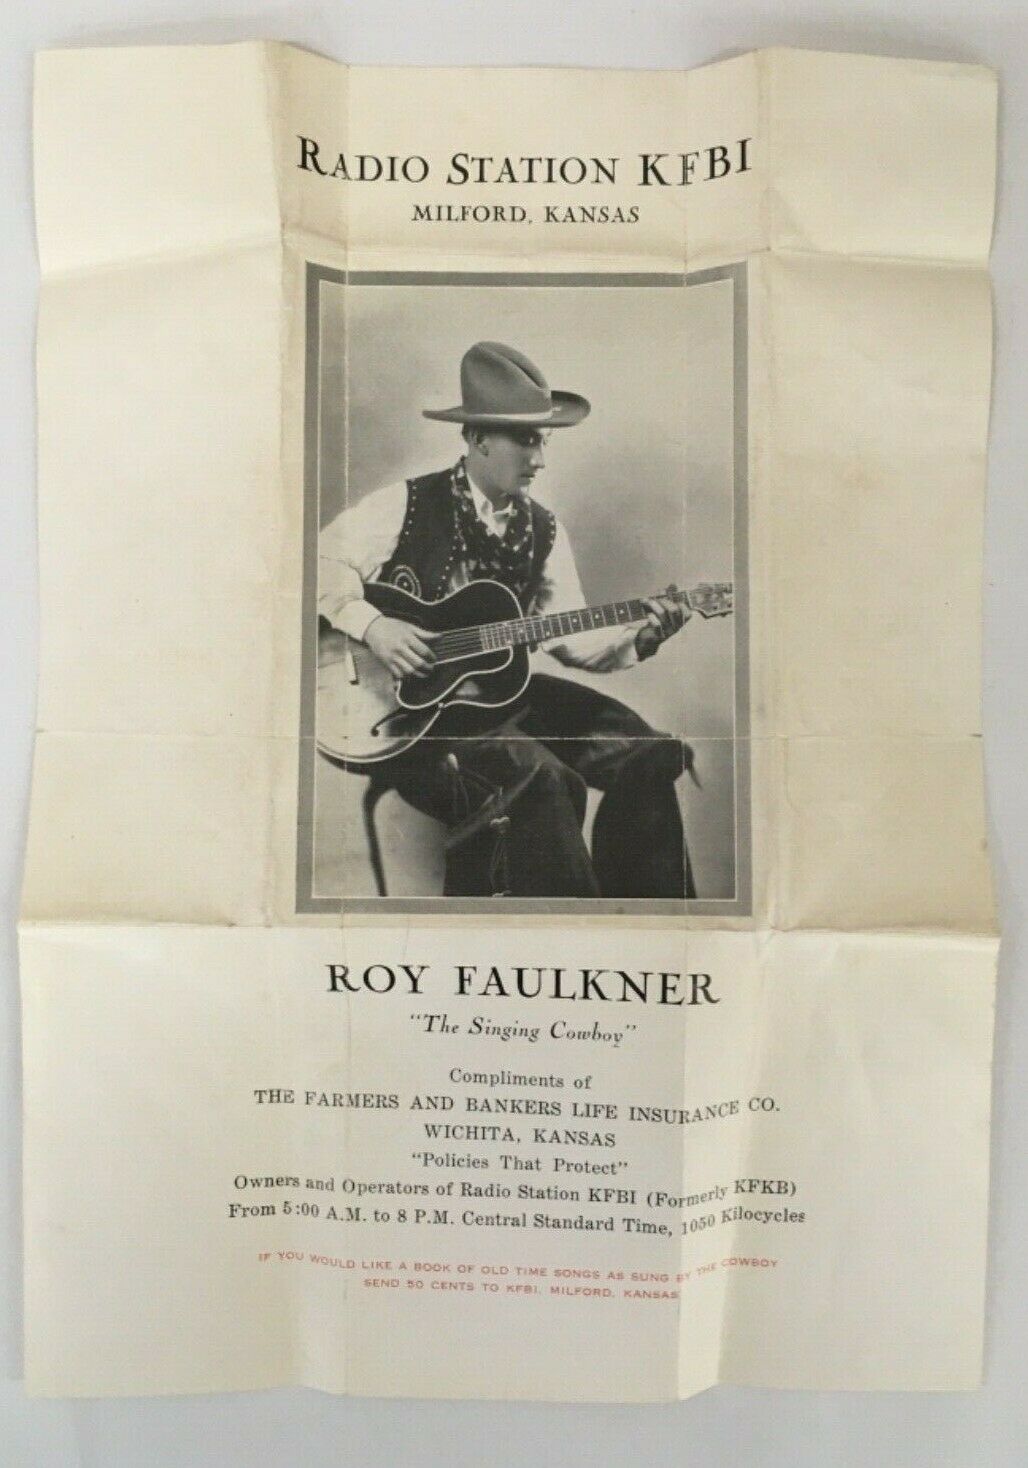 Country Music 30's / 40's Radio Kfbi Roy Faulkner Advertising Milford Kansas